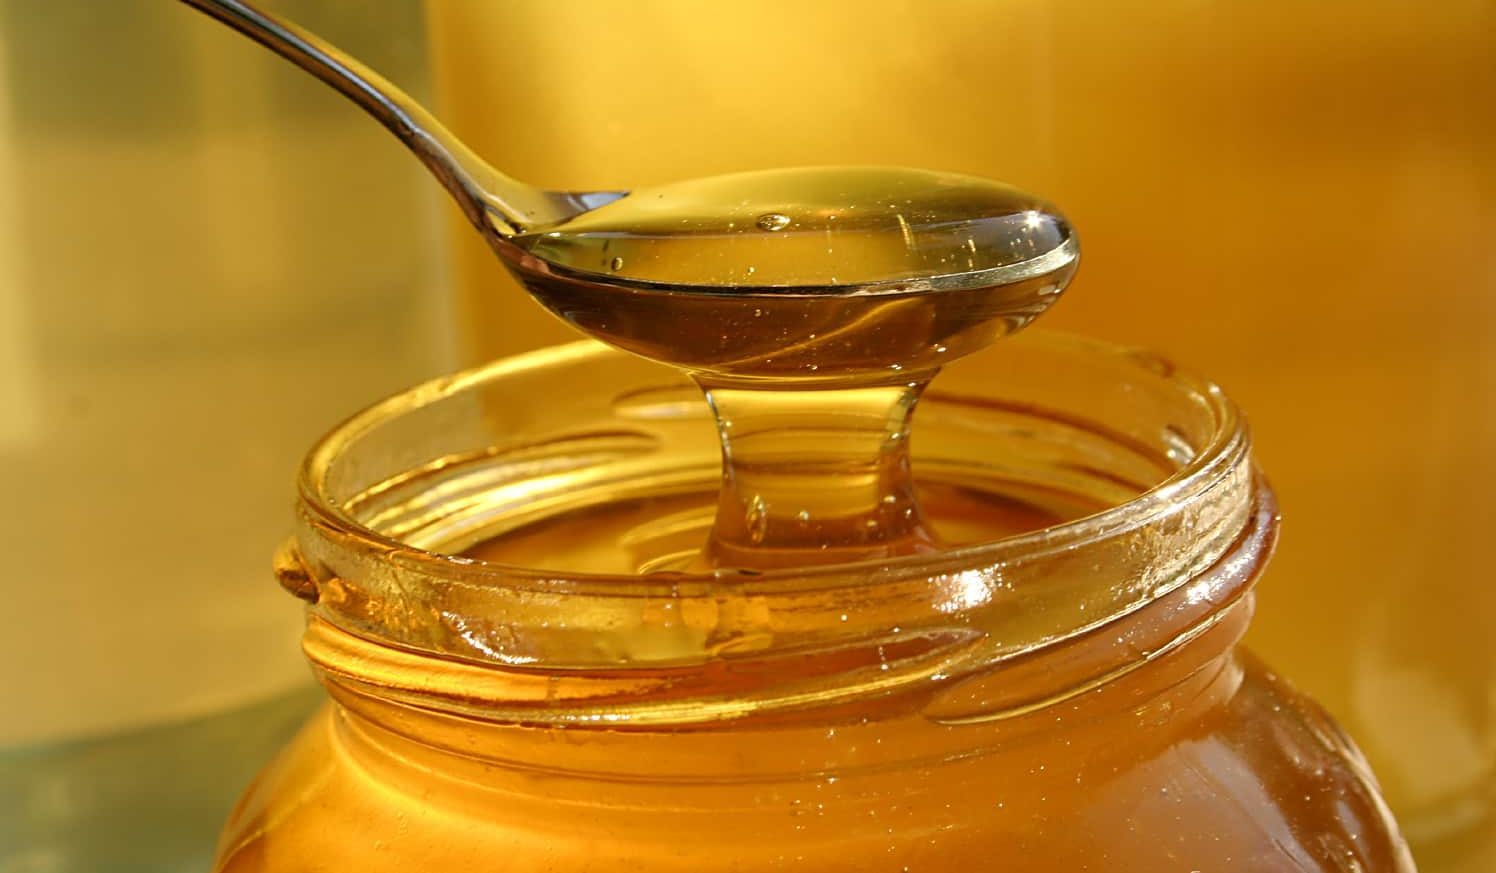 العسل الملكي او العسل الماليزي الموجود في الصيدليات هل هو